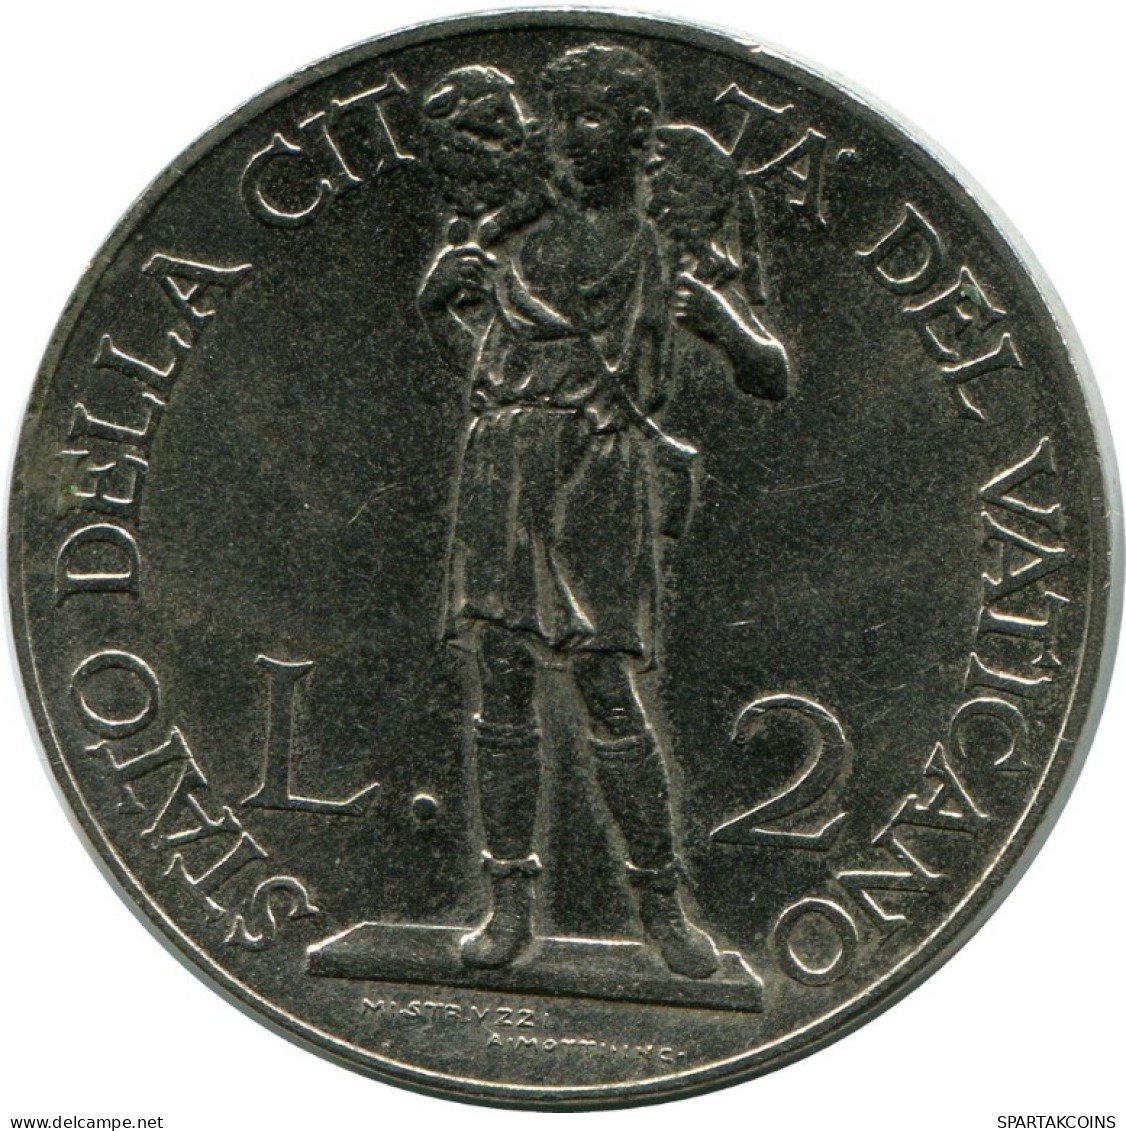 2 LIRE 1937 VATICAN Coin Pius XI (1922-1939) #AH300.16.U.A - Vatican